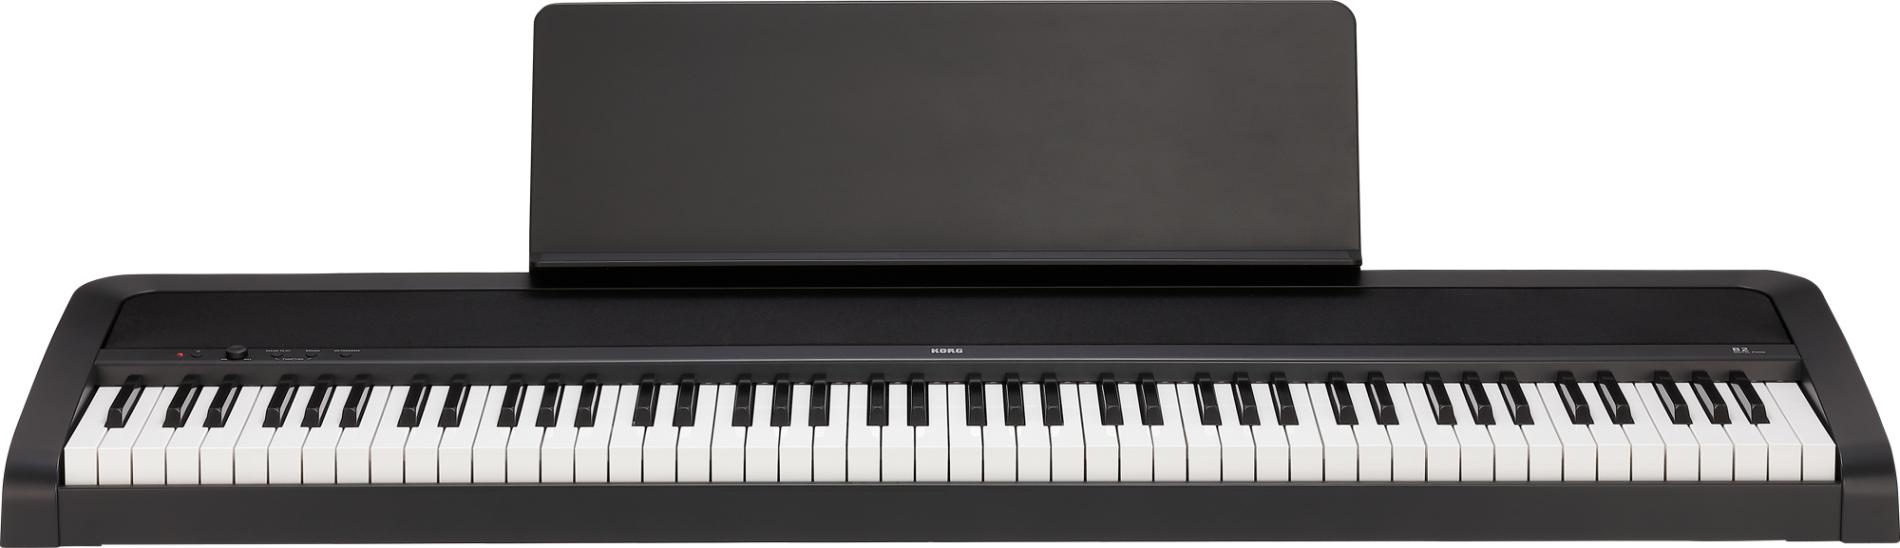 B2 Digital-Piano schwarz